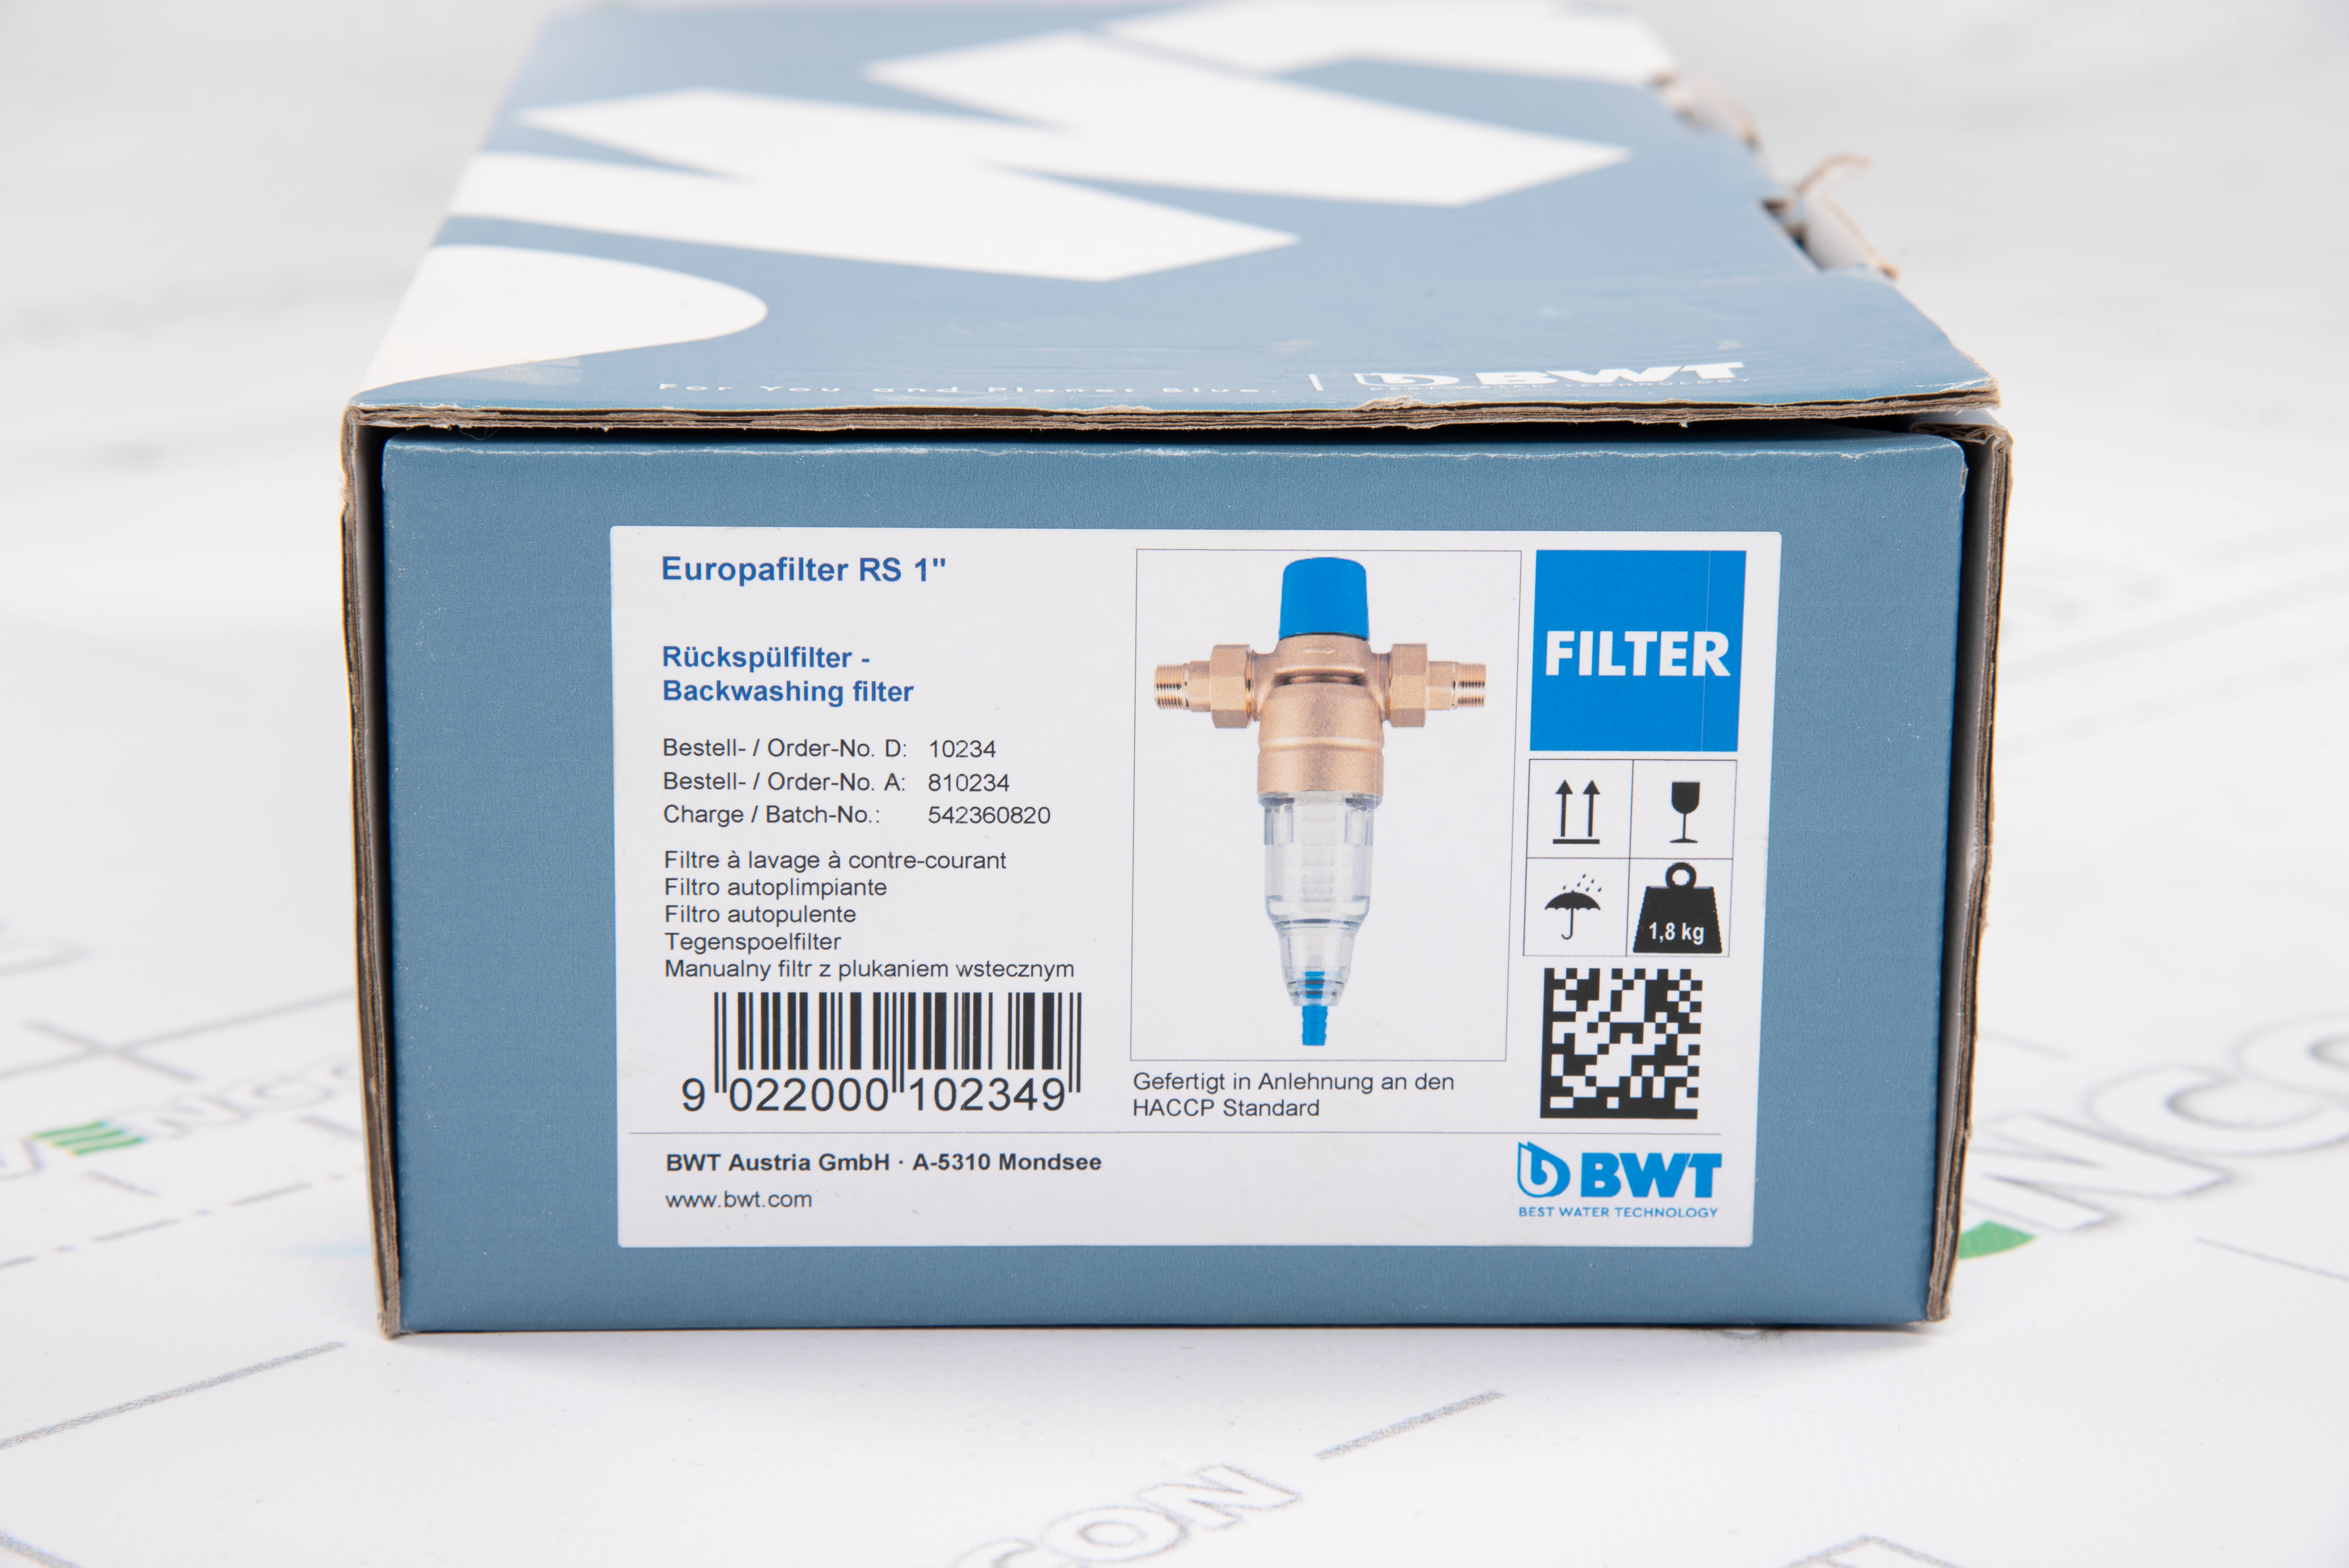 Фильтр BWT Europafilter RS (RF) 1" внешний вид - фото 9